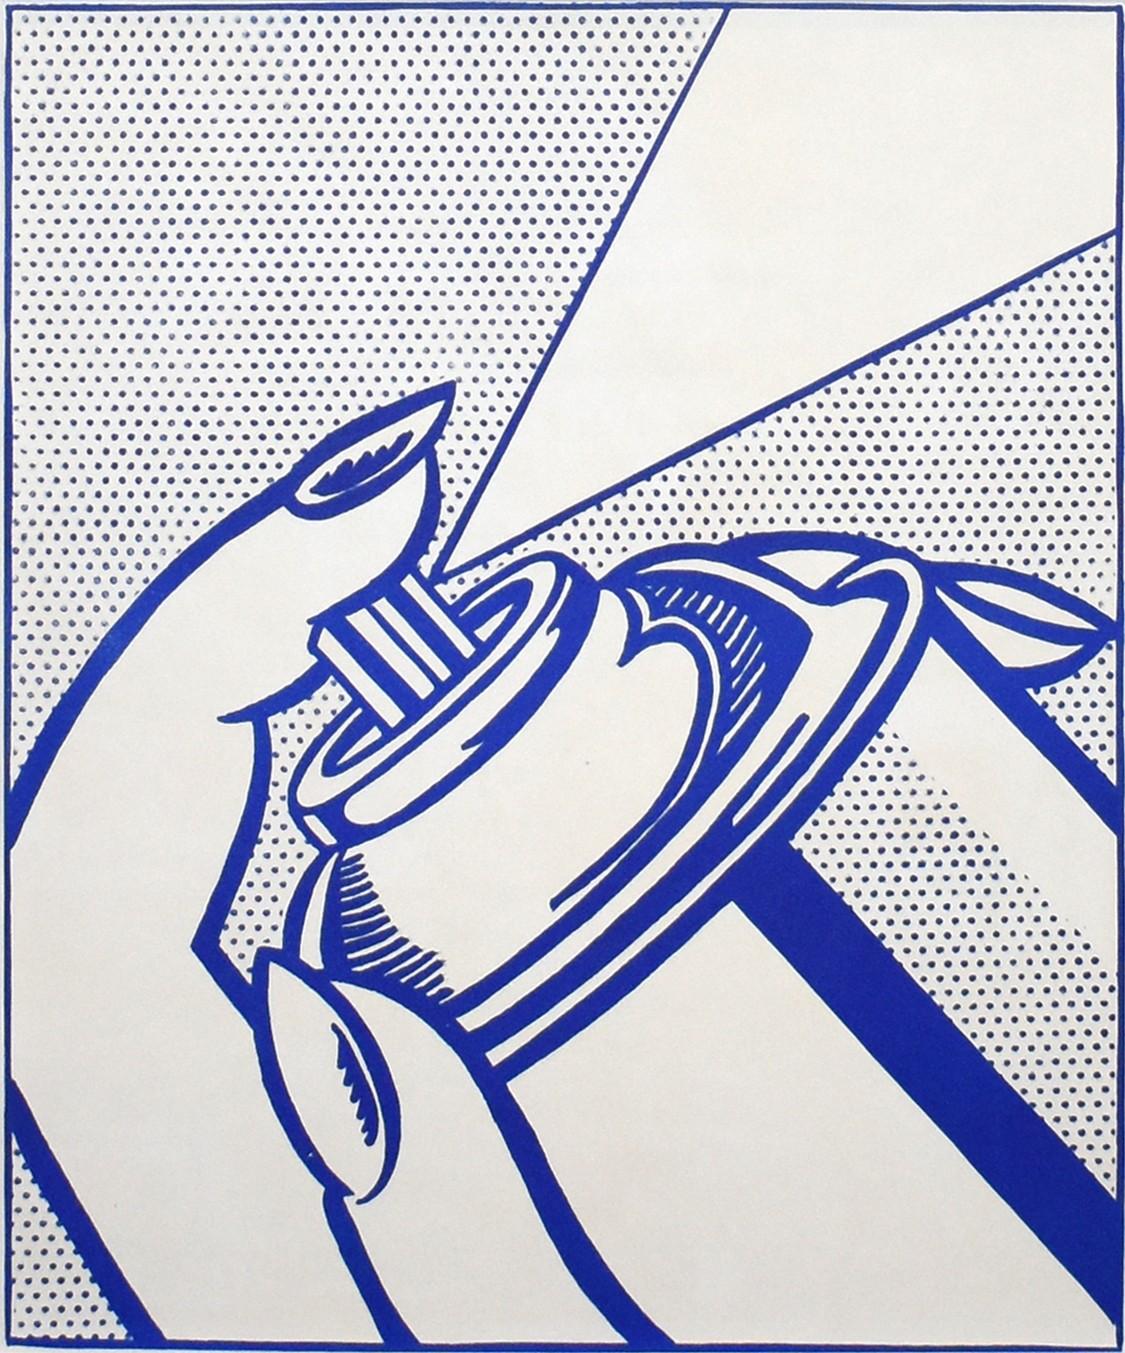 Künstler: Roy Lichtenstein
Titel: Spray Can
Portfolio: 1¢ Leben
Medium: Lithographie auf weißem Velin
Jahr: 1963
Auflage: 2000
Rahmengröße: 21 1/4" x 19 1/4"
Blattgröße: 16" x 11 1/2"
Bildgröße: 12 1/2" x 10 1/2"
Unterschrift: Unsigniert
Referenz: